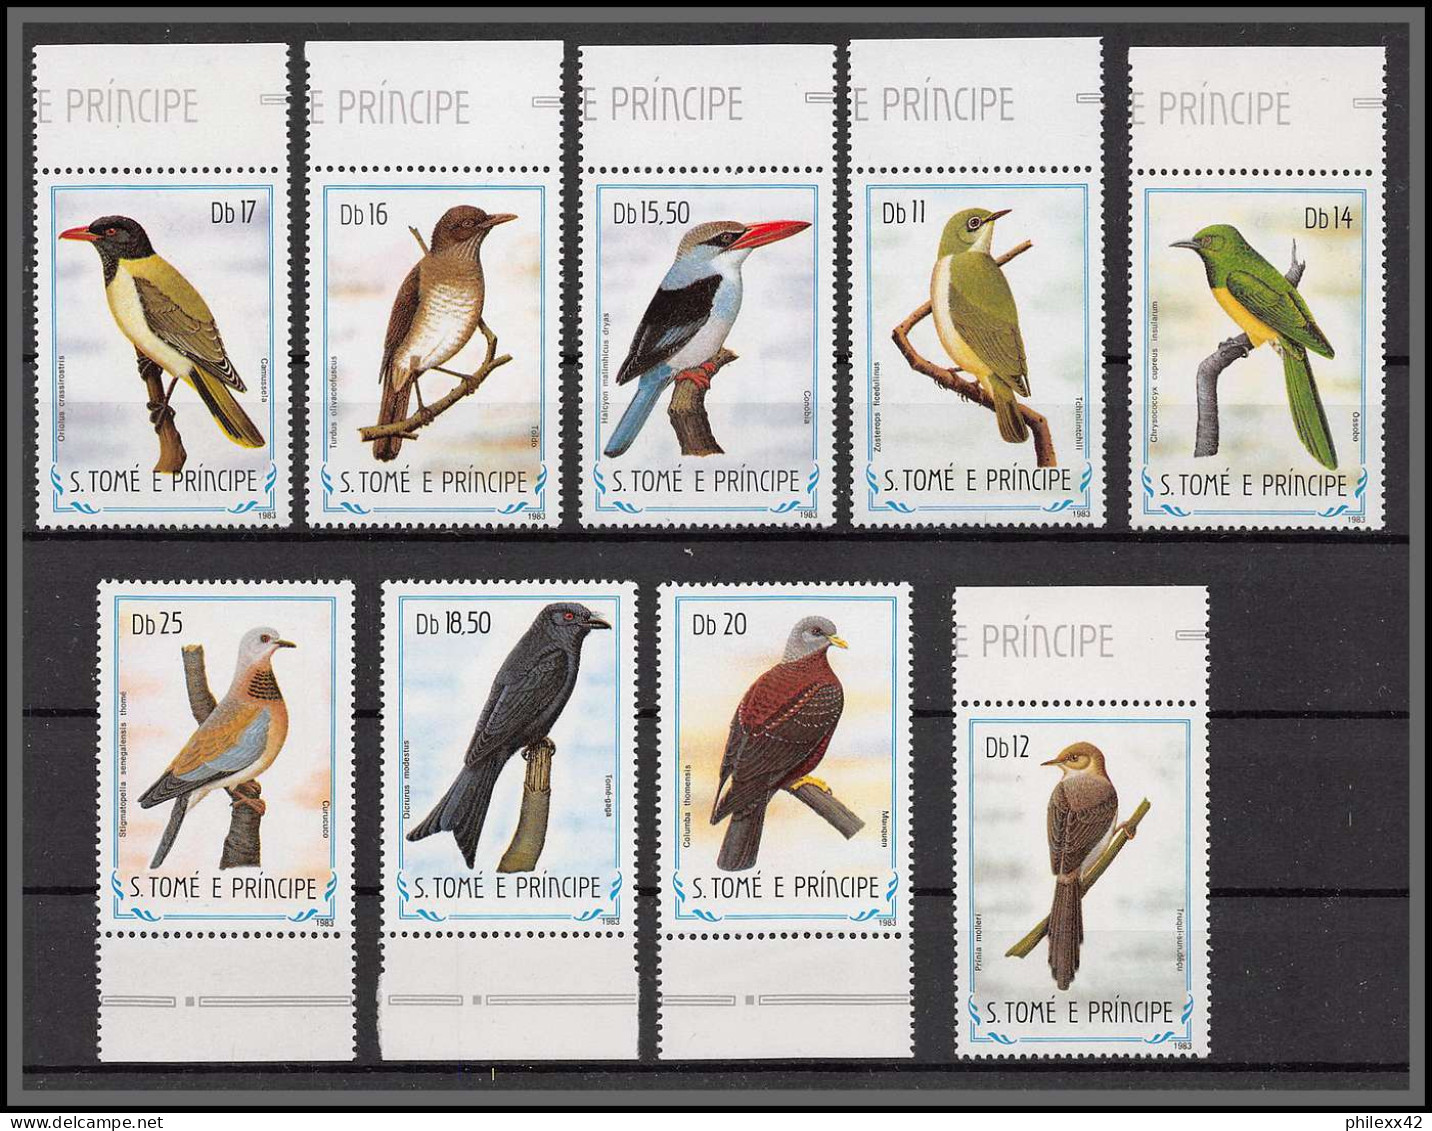 86356 Sao Tome E Principe 1983 Mi N°888/896 Oiseaux (birds) Vogel ** MNH Perroquets 9 Valeurs - Collections, Lots & Séries